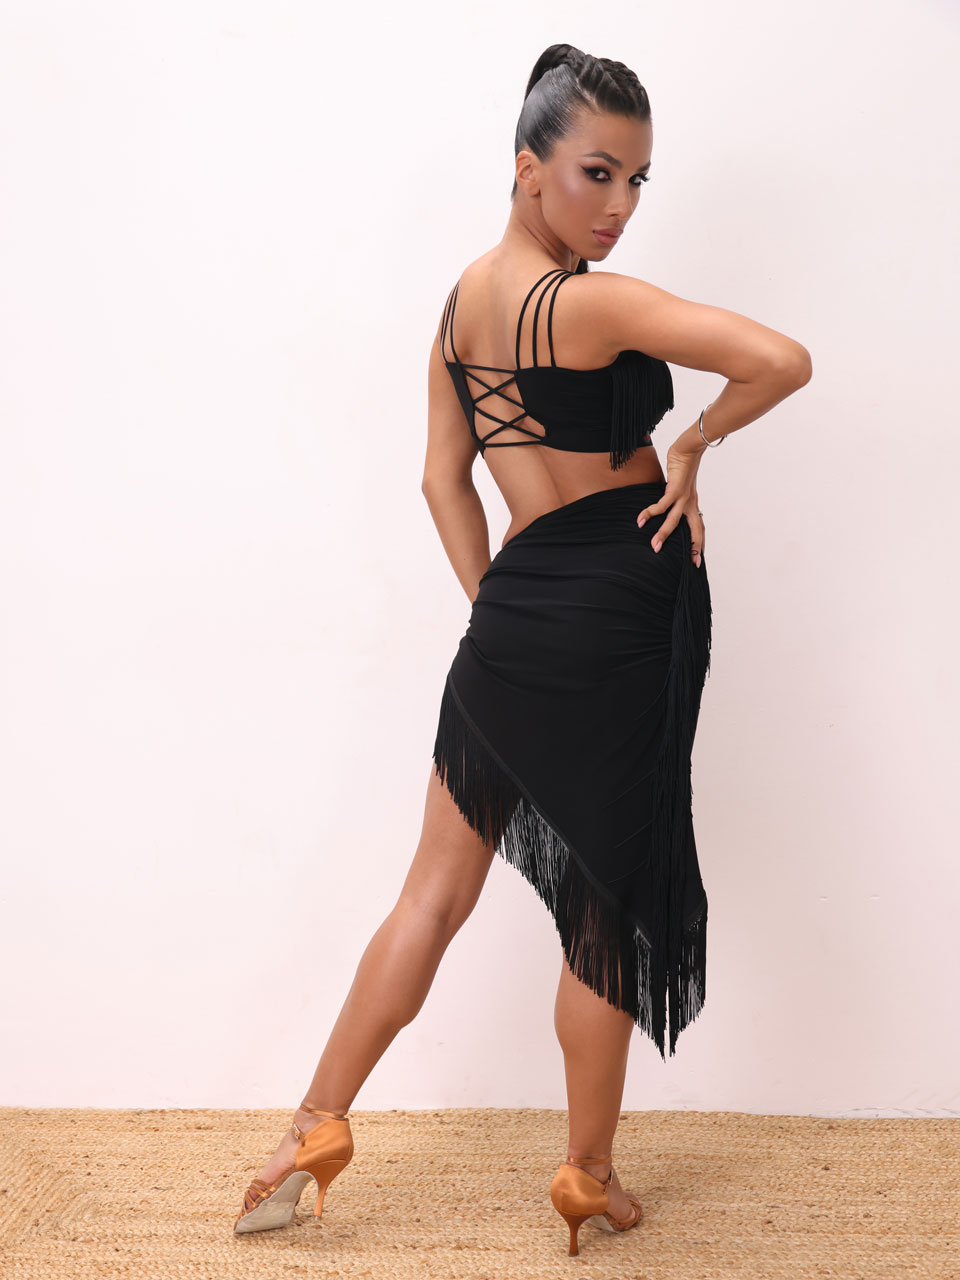 Женская одежда для бальных танцев и спорта - Купить в интернет-магазине Primabella